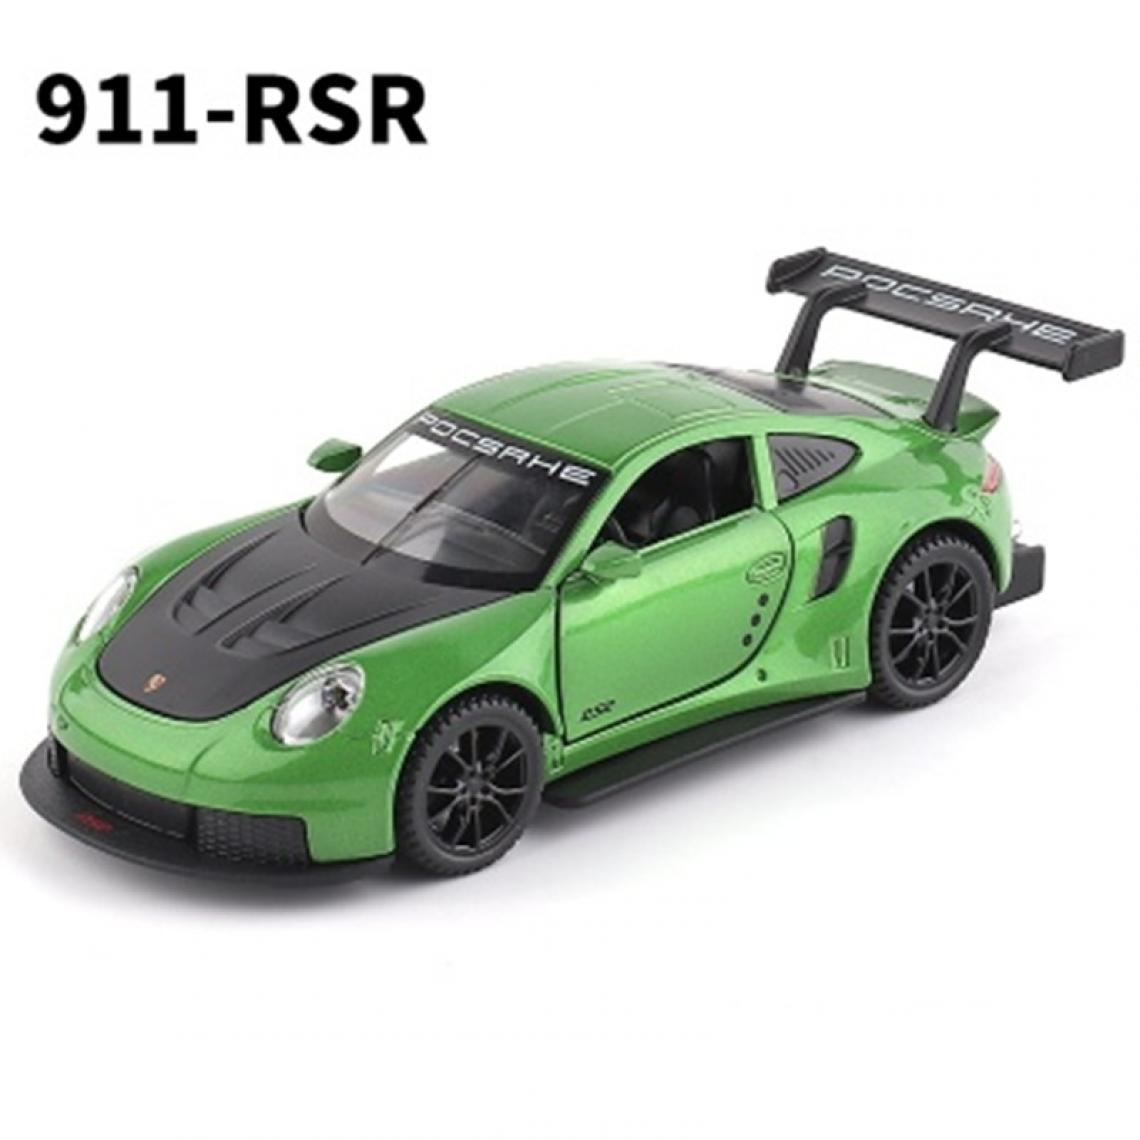 Universal - 1: 32 Porsche 911 RSR Coupé en alliage Voiture jouet moulé sous pression Voiture jouet métallique Voiture modèle Haute simulation Collection Jouets pour enfants | Voiture jouet moulé sous pression (vert) - Voitures